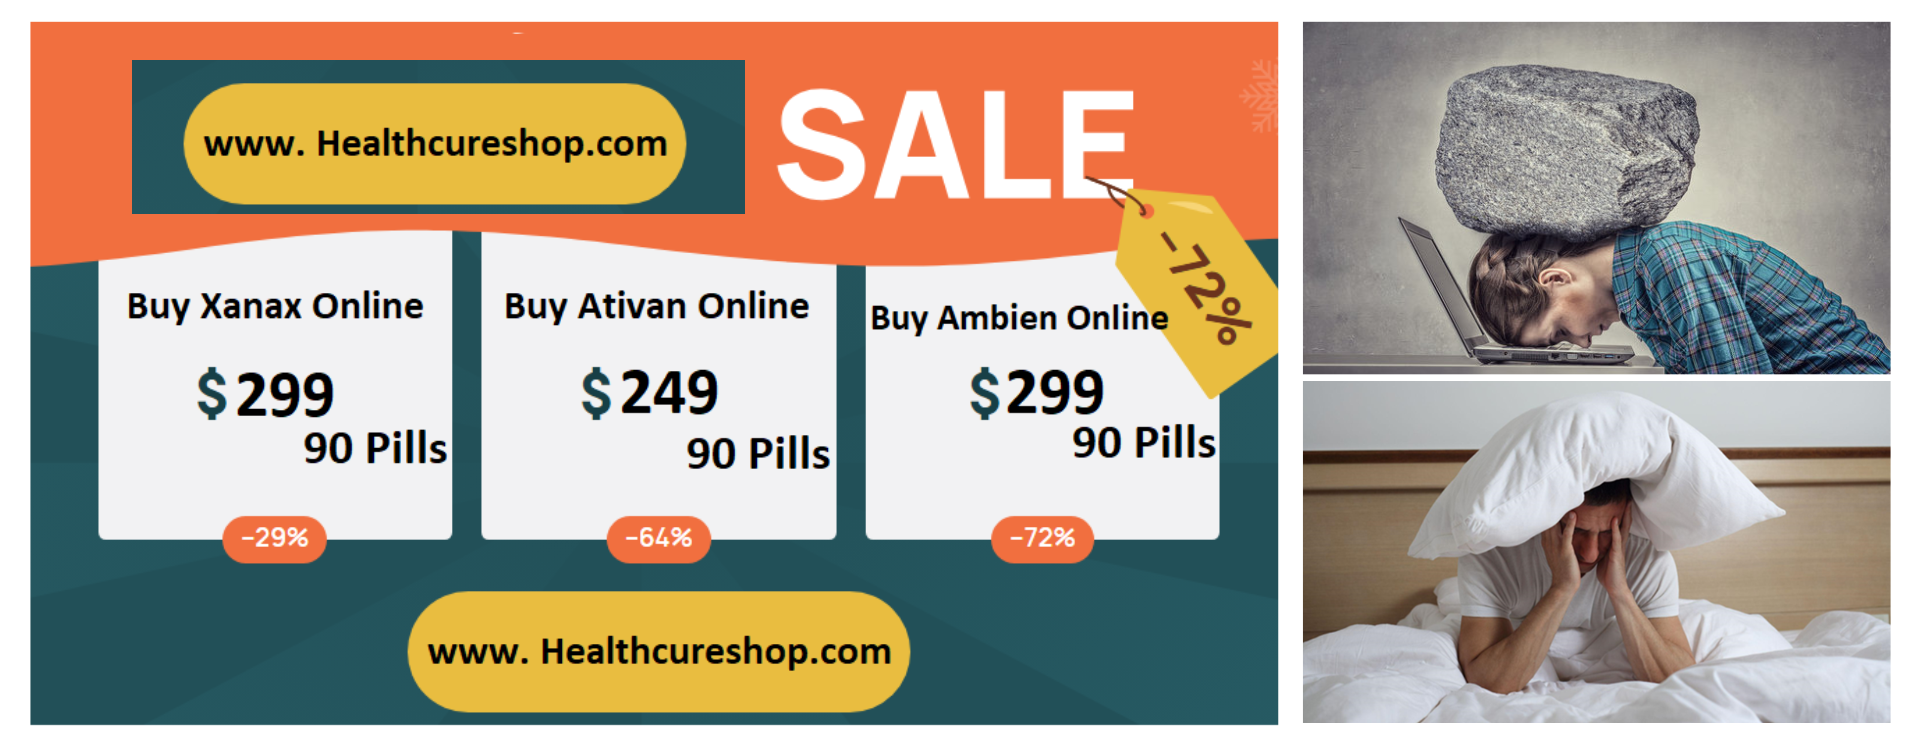 Online Buy Ativan